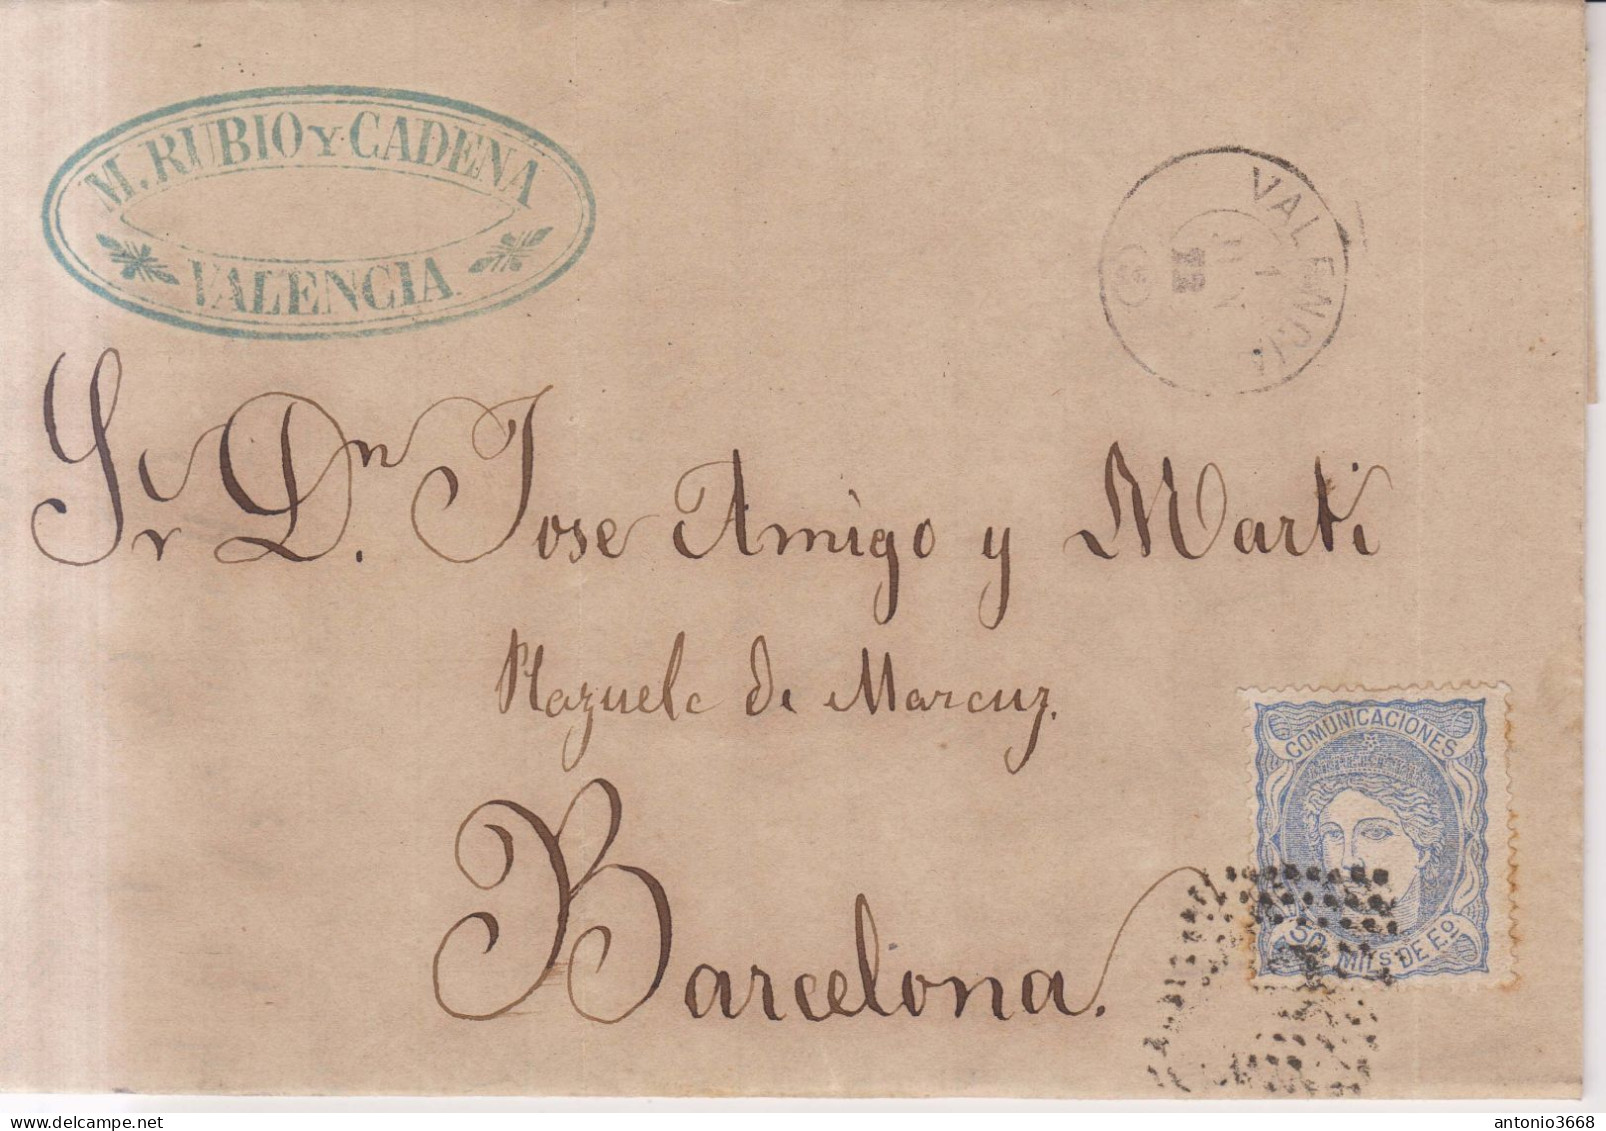 Año 1870 Edifil 107 Efigie Carta Matasellos Rombo Valencia Membrete M.Rubio Cadena - Covers & Documents